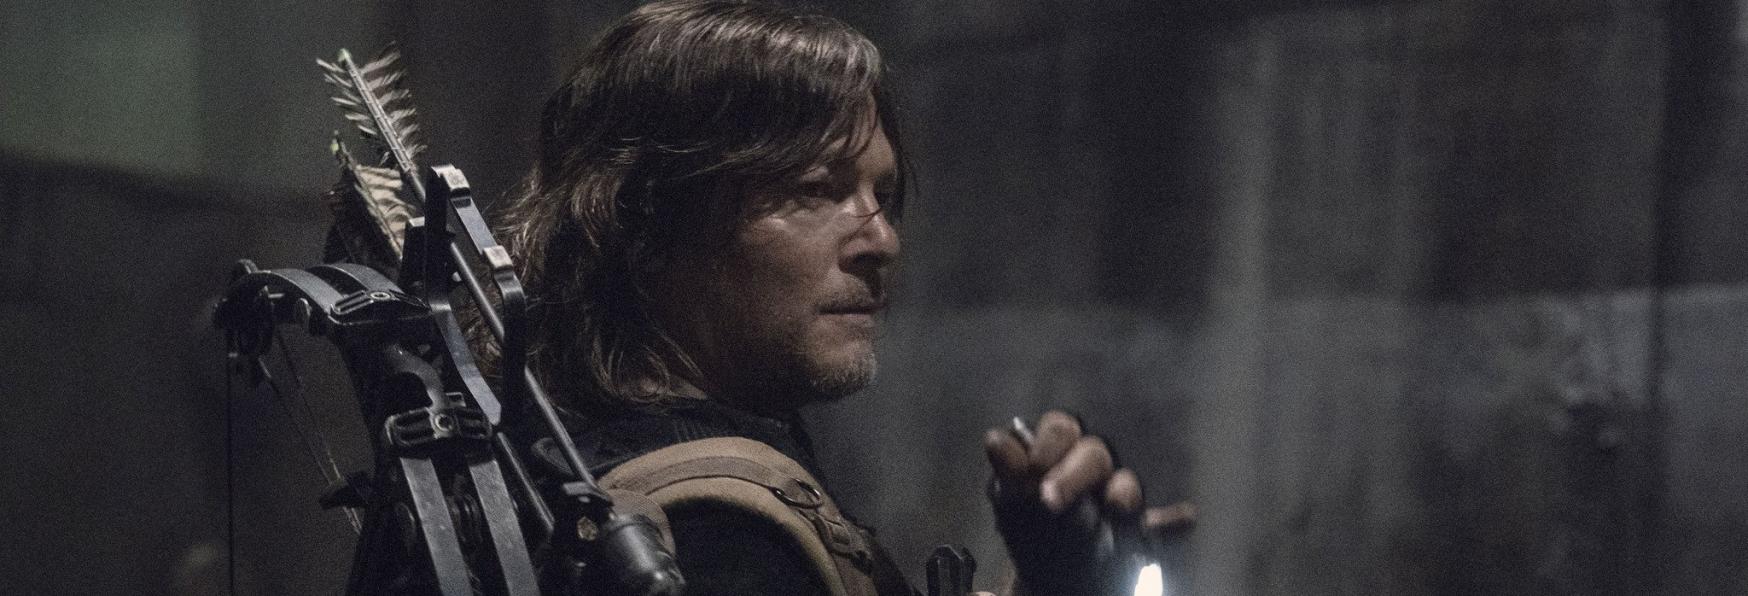 The Walking Dead: Norman Reedus anticipa che lo Spin-off su Daryl sarà "Totalmente Diverso"